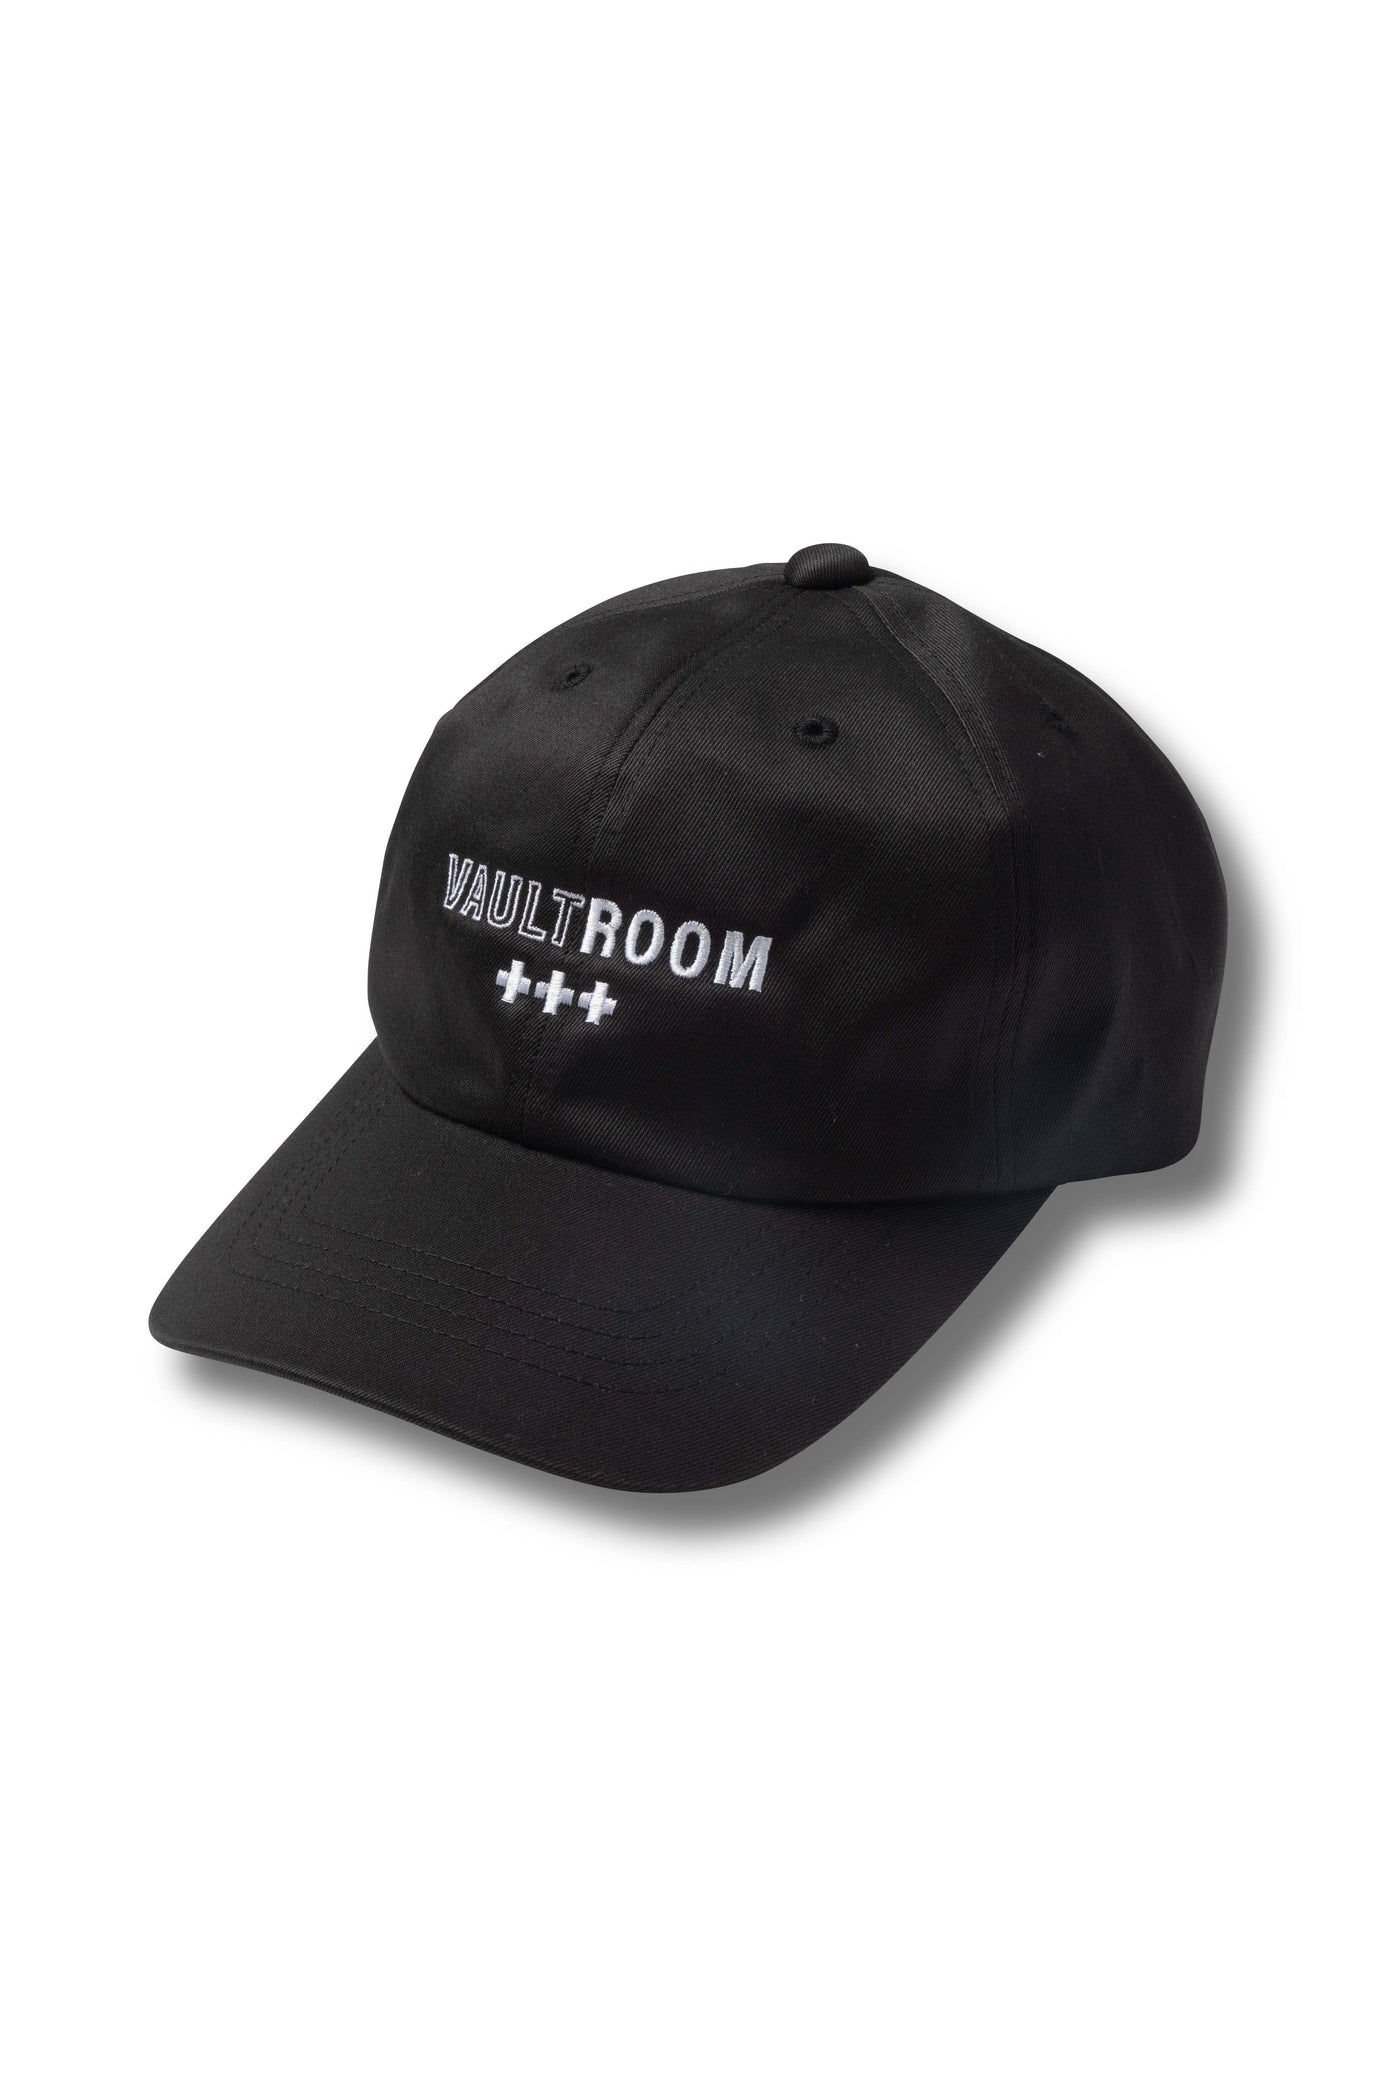 vaultroom logo cap-